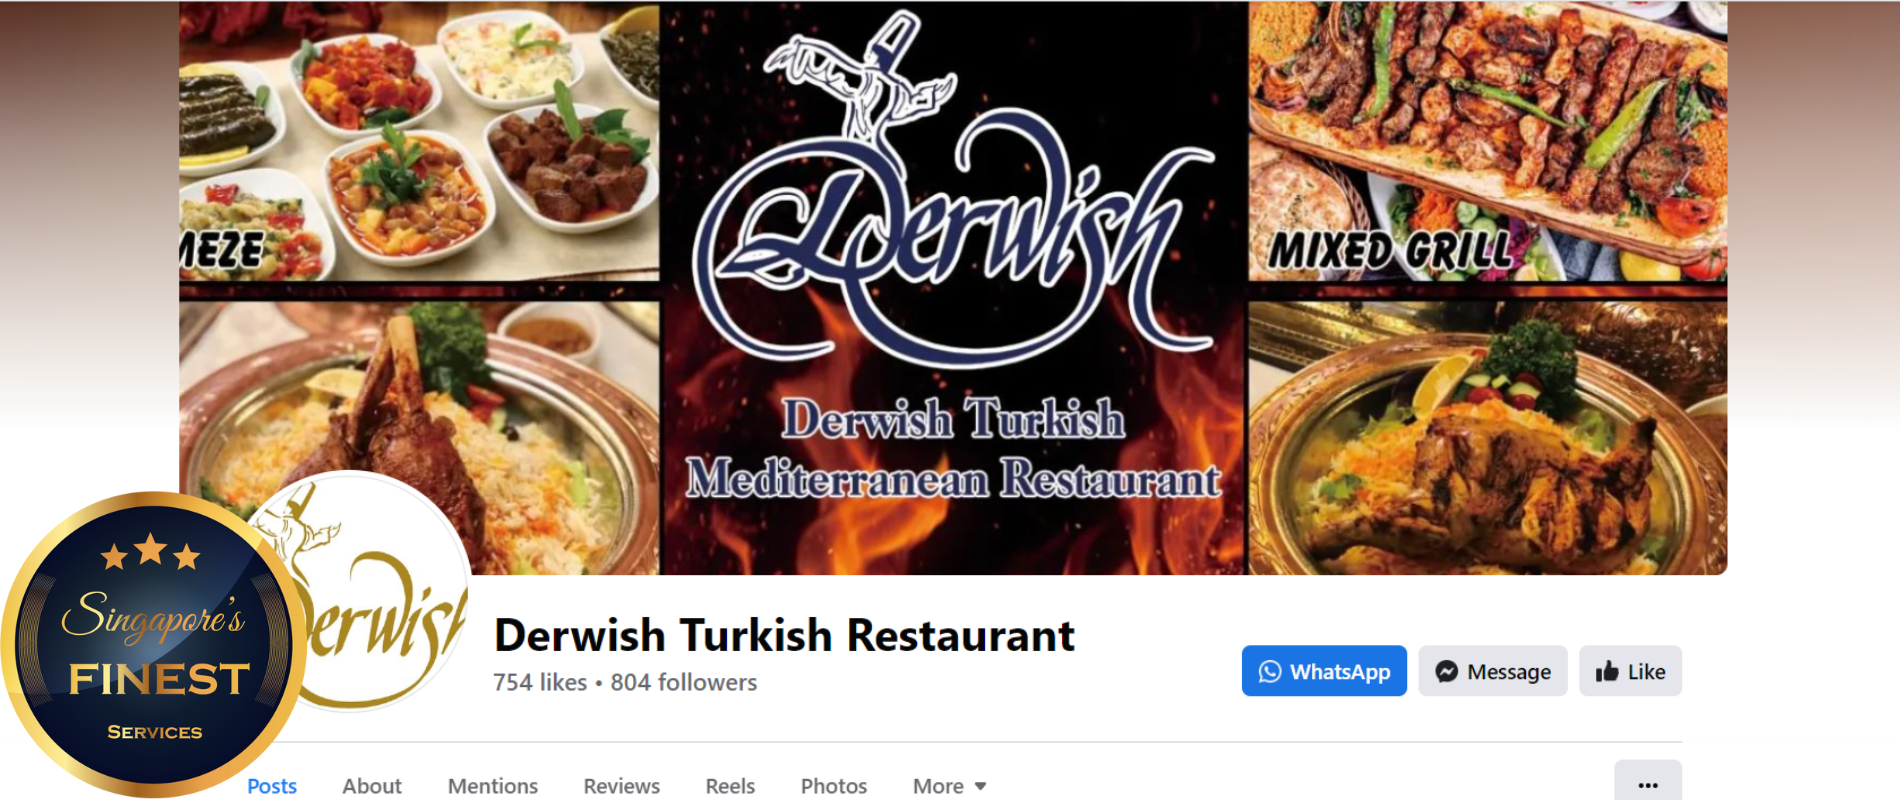 The Finest Turkish Restaurants in Singapore